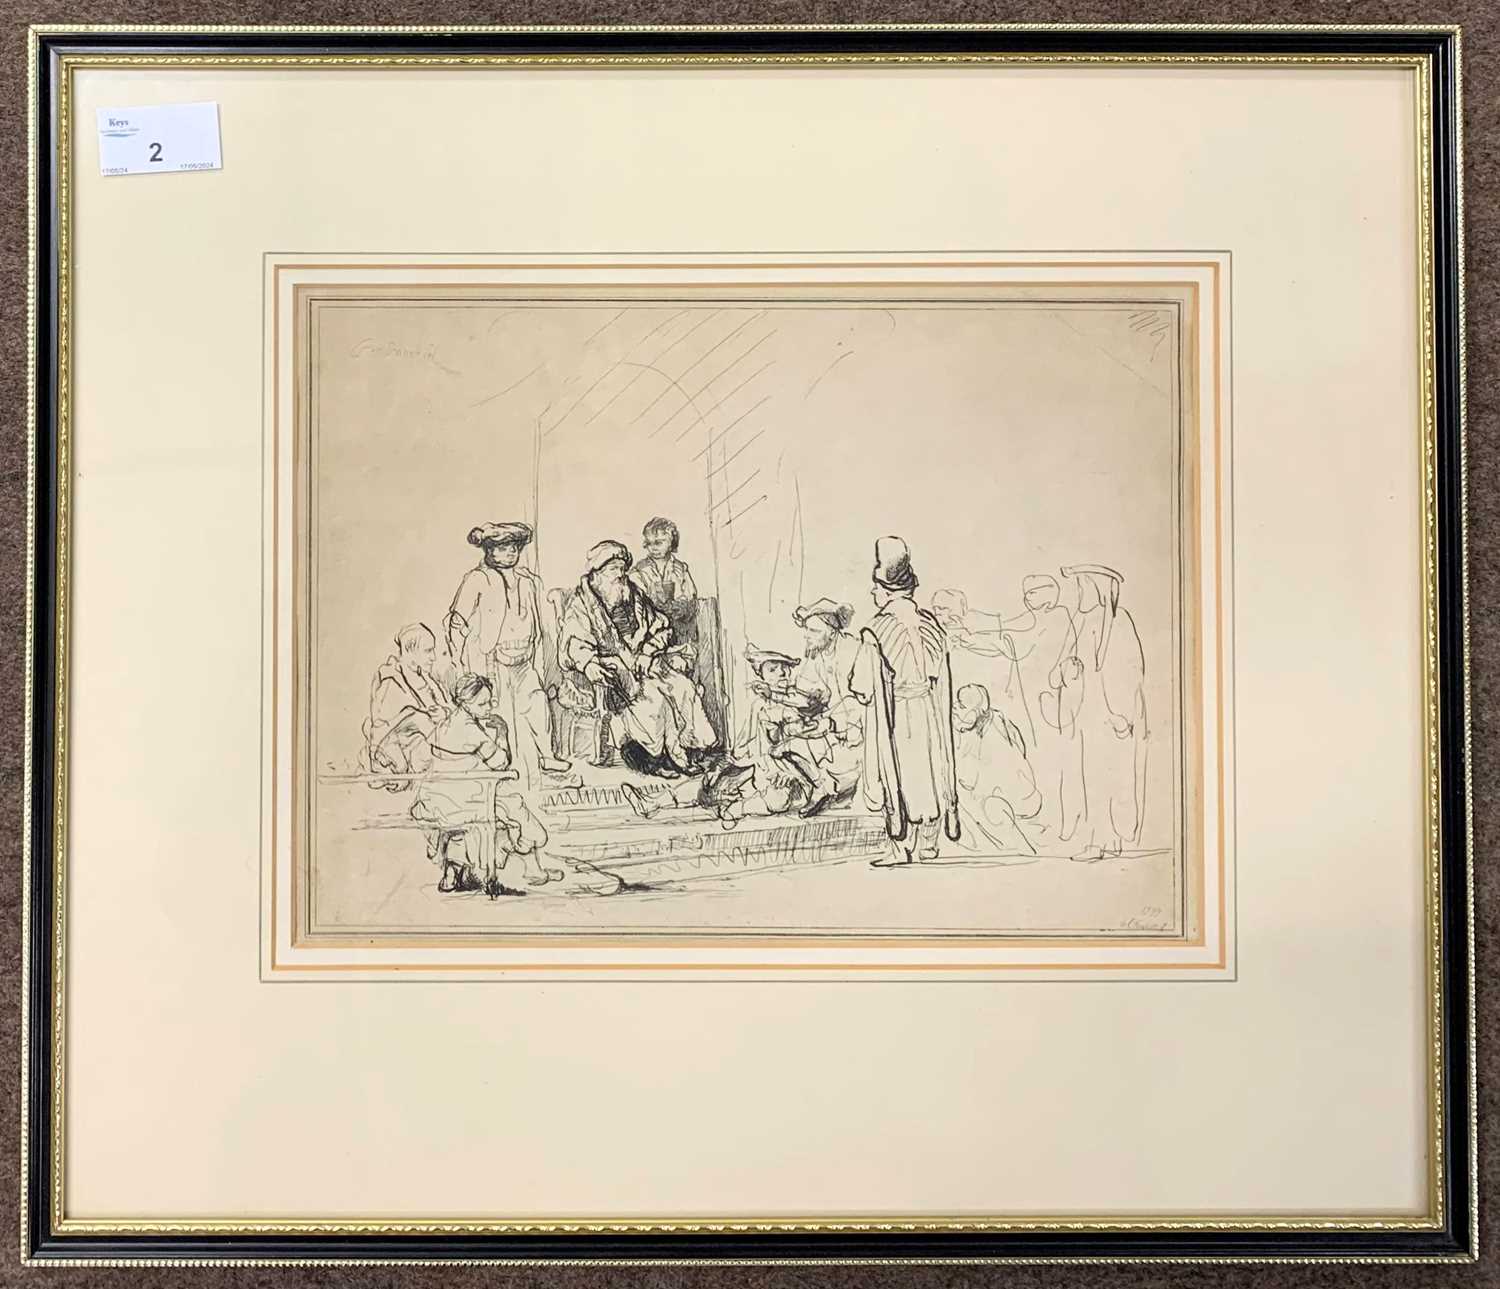 Ignace Joseph de Claussin (1766-1844) after Rembrandt, a group of figures surround Solomon (?),